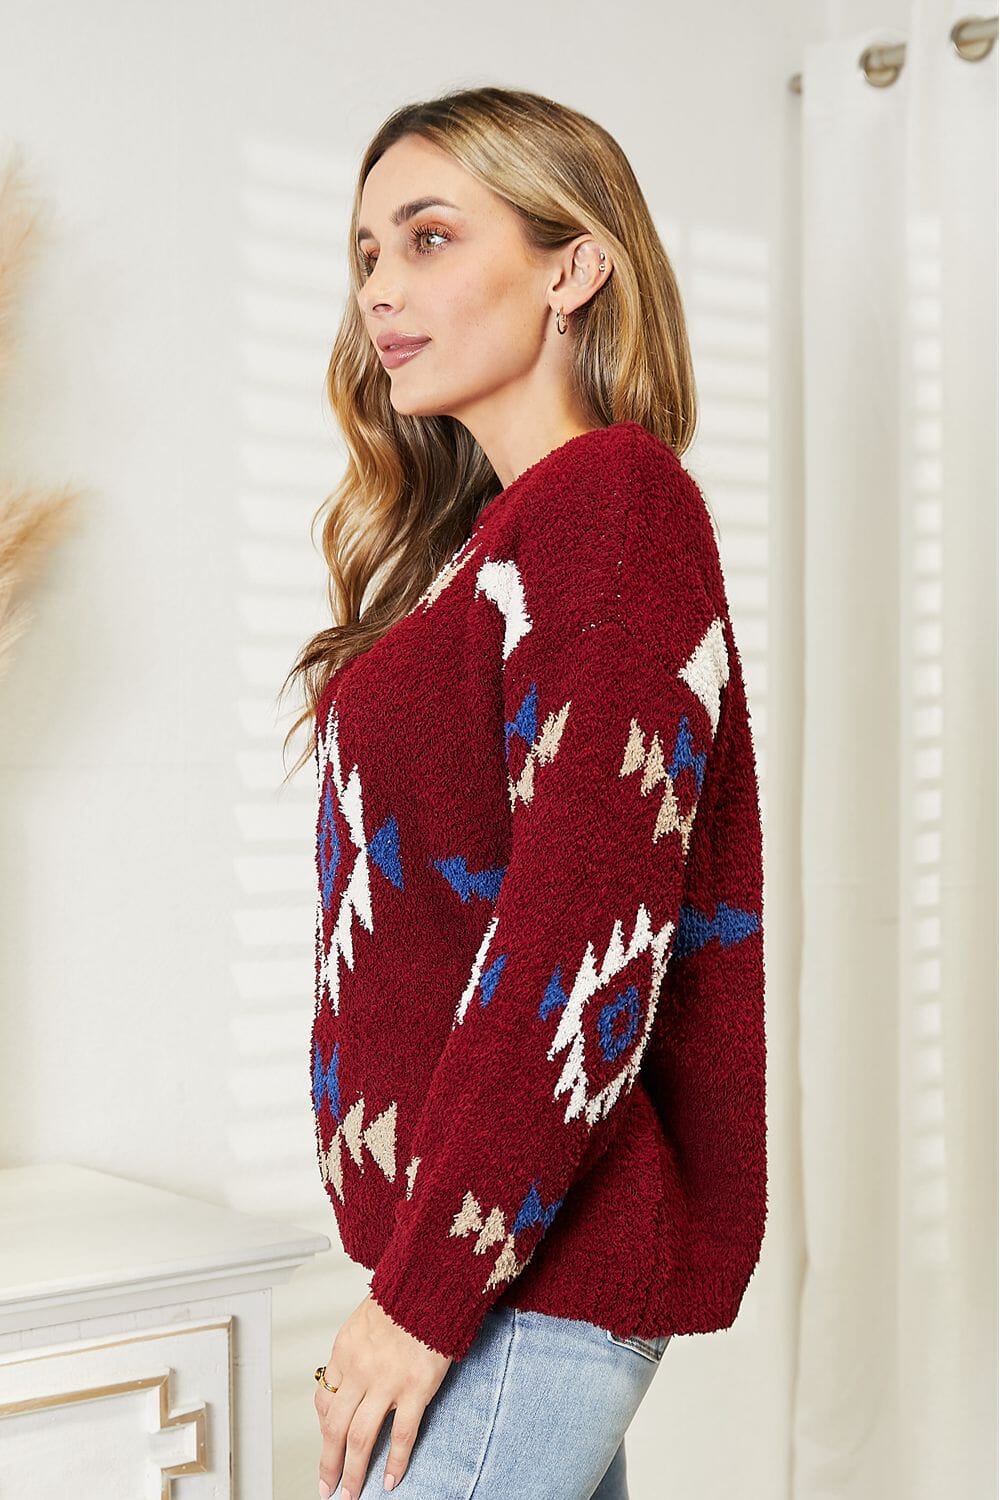 HEYSON Full Size Aztec Soft Fuzzy Sweater jehouze 